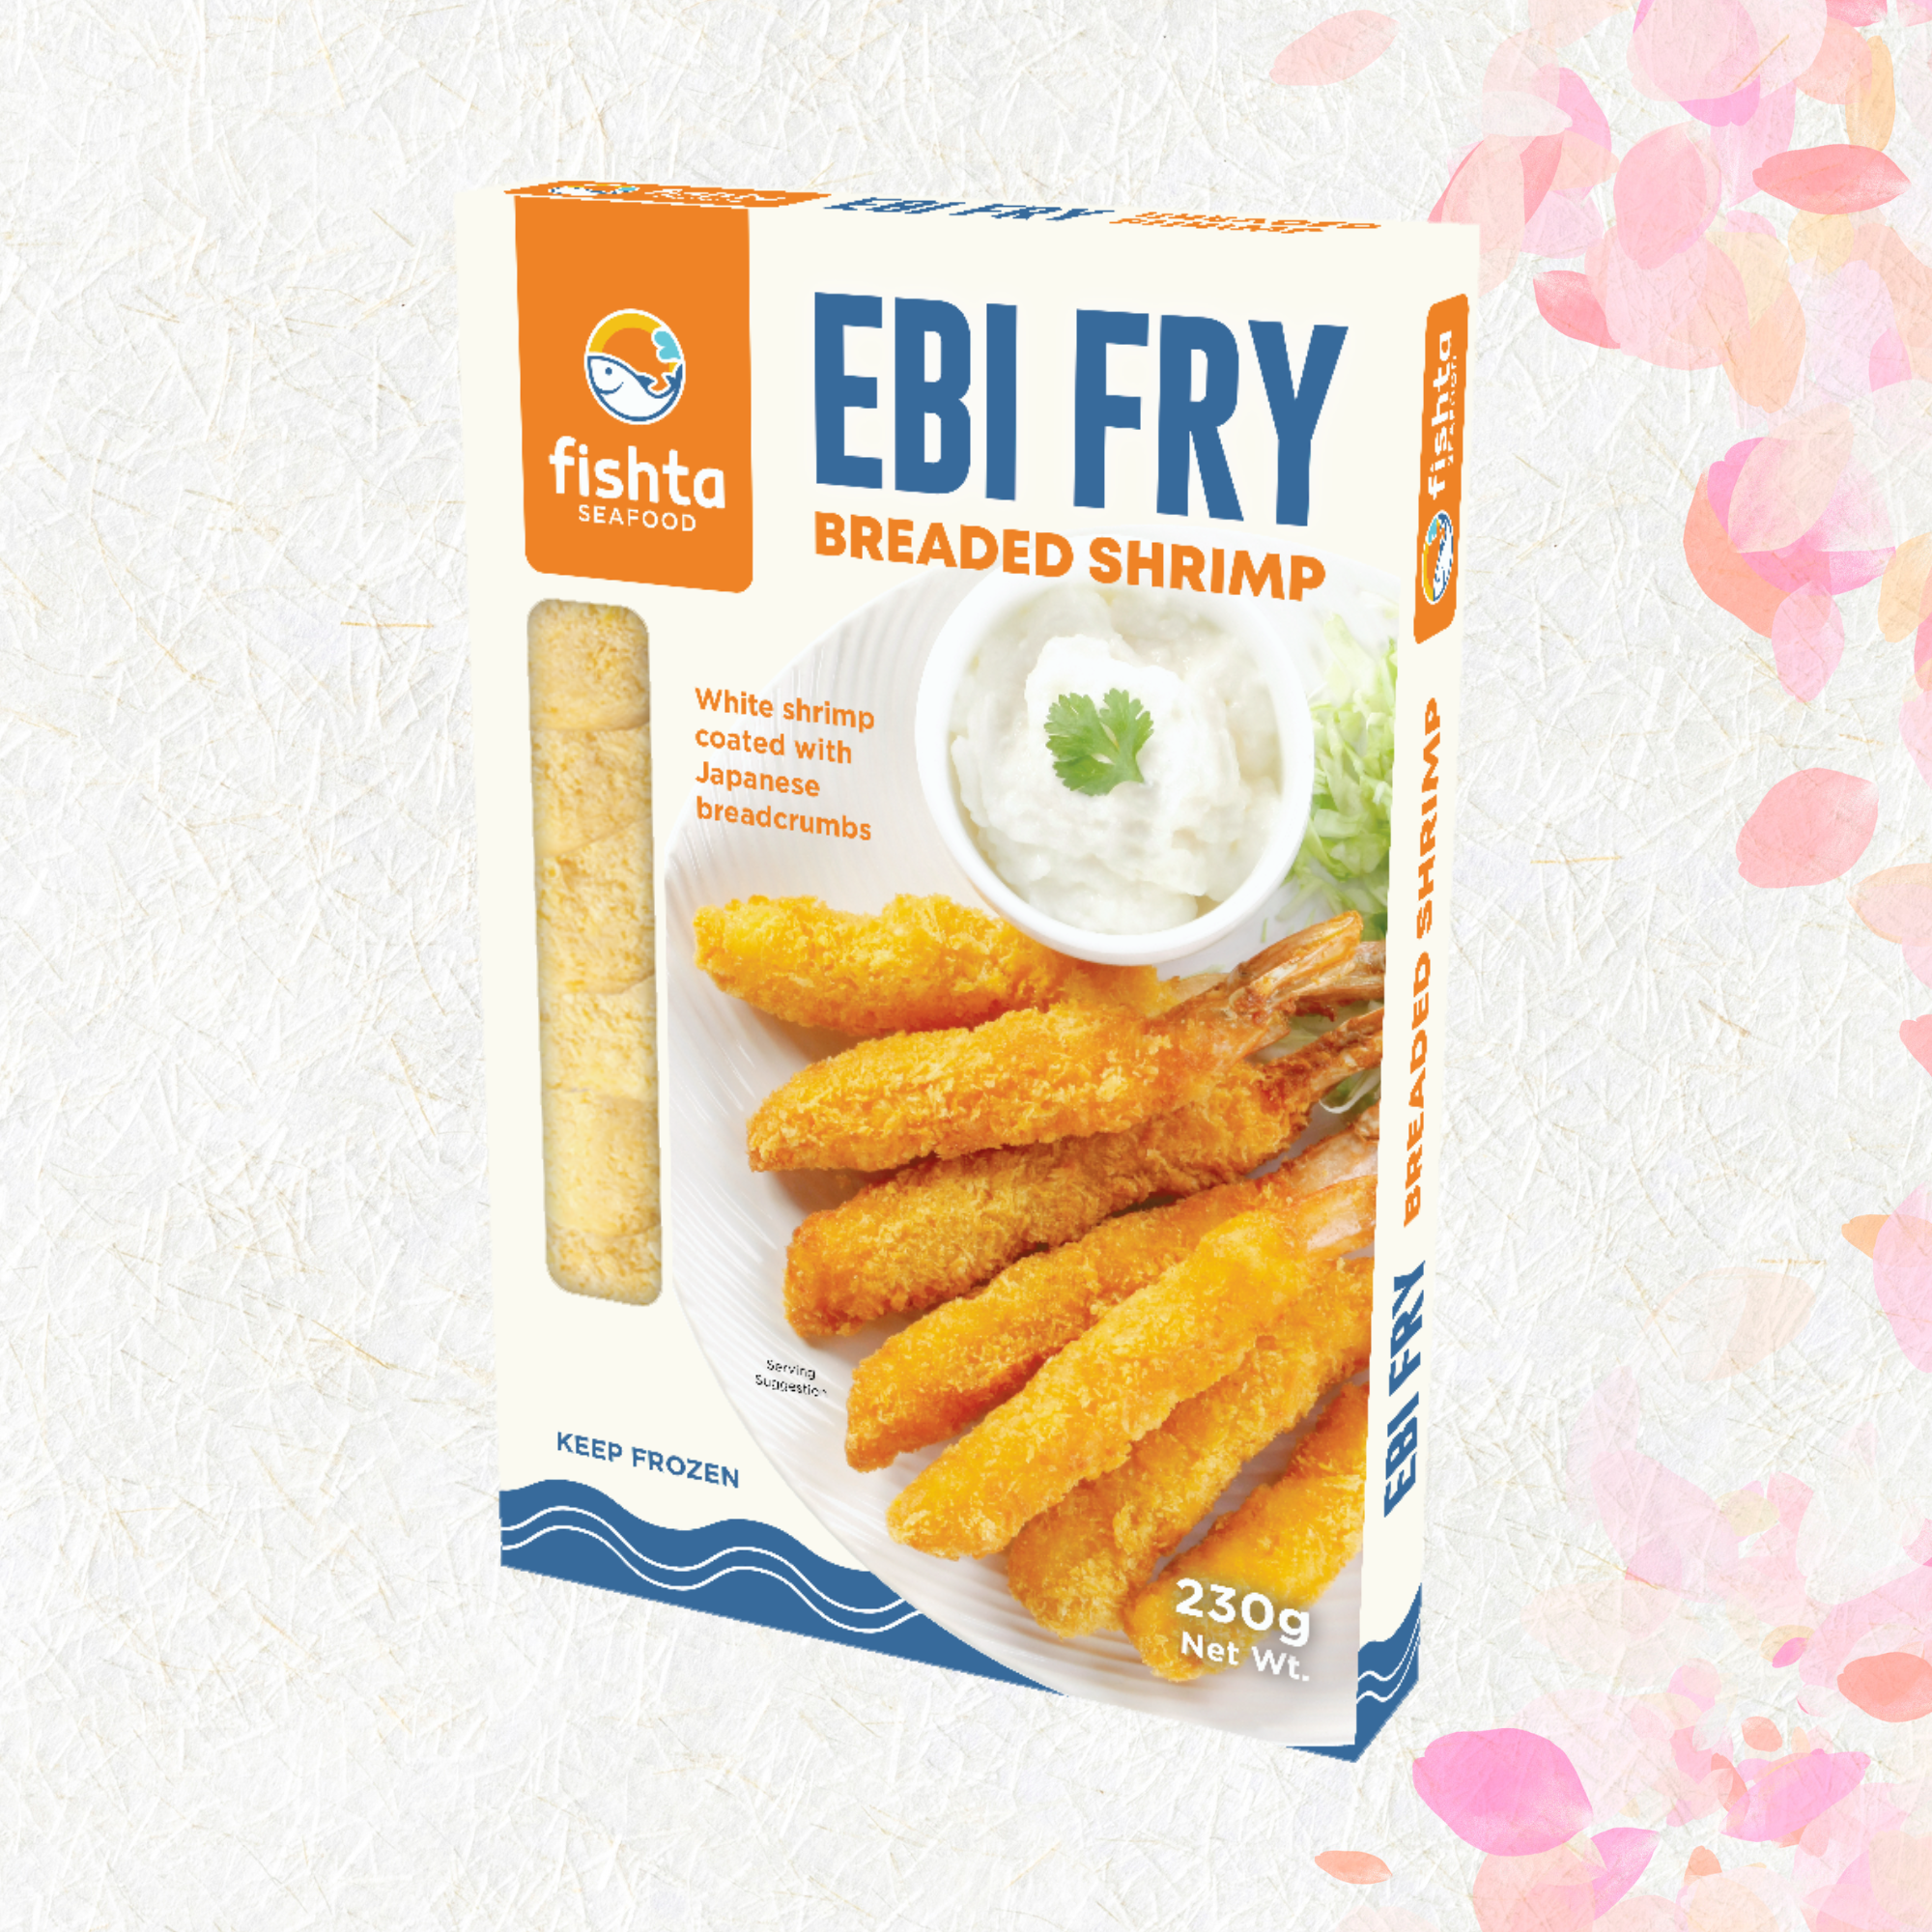 Ebi Fry Breaded Shrimp